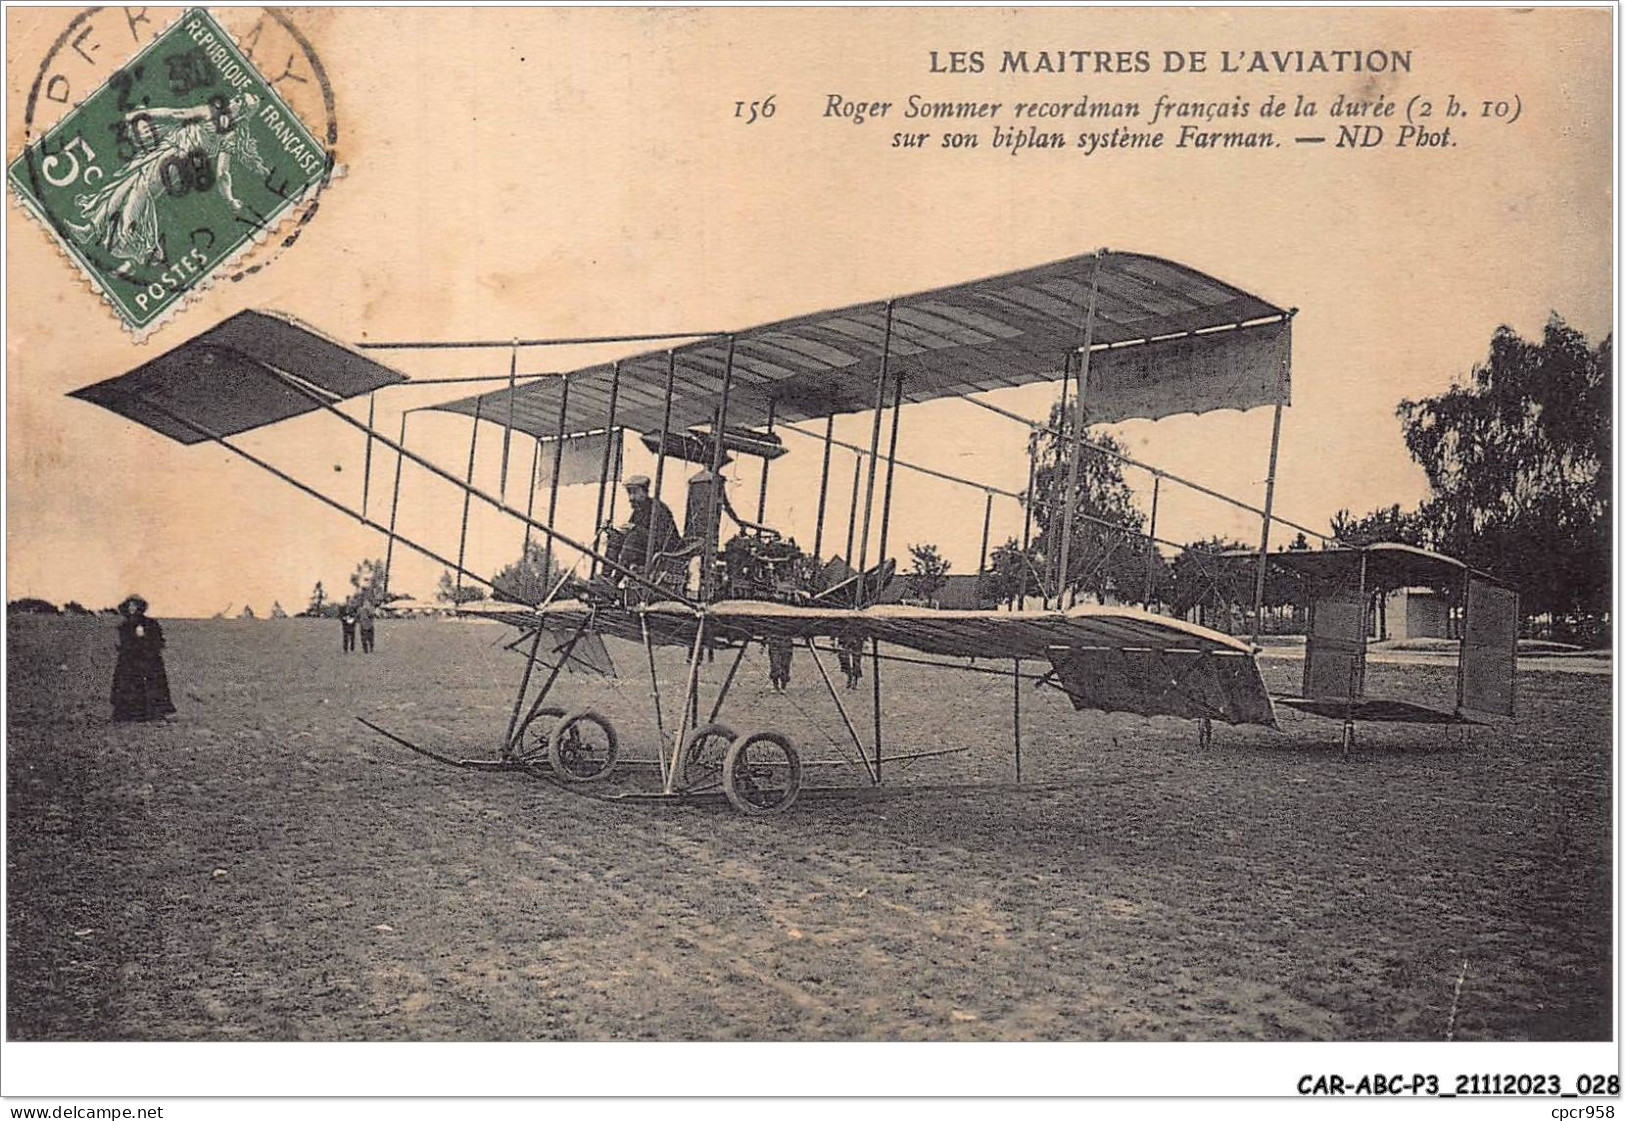 CAR-ABCP3-0198 - AVIATION - LES MAITRES DE L'AVIATION - ROGER SOMMER RECORDMAN FRANCAIS DE LA DUREE SUR SON BIPLAN  - Airmen, Fliers